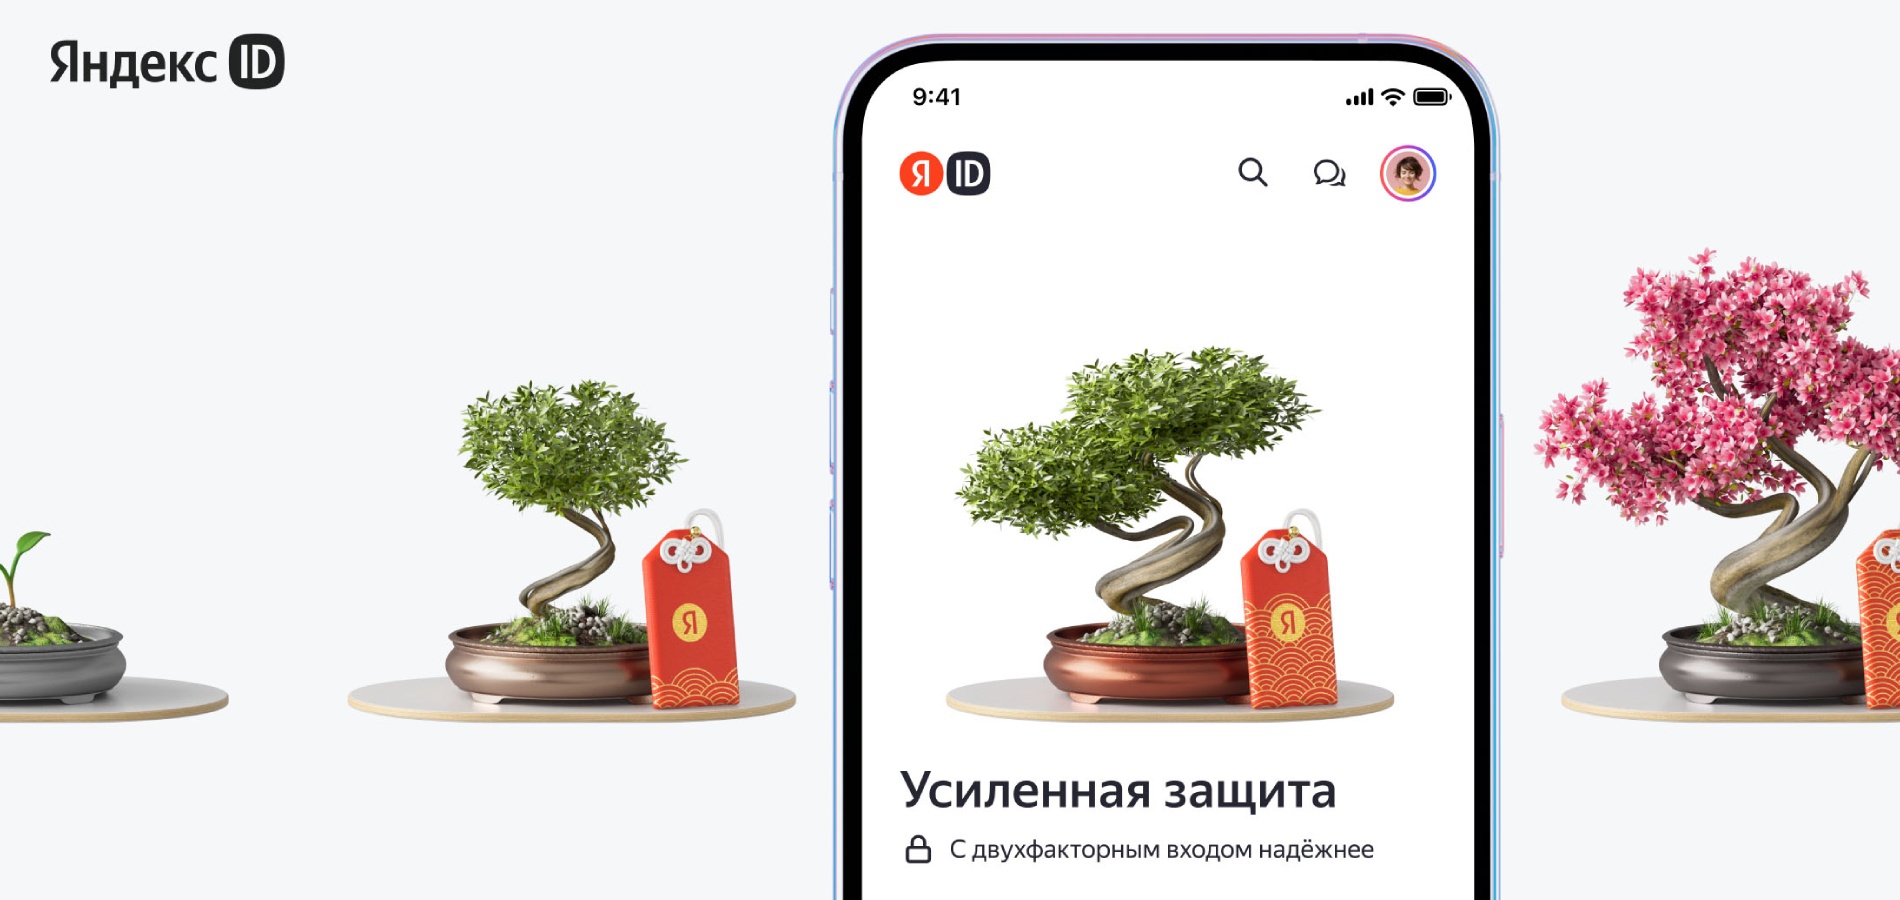 В Яндекс ID обновили систему настройки безопасности